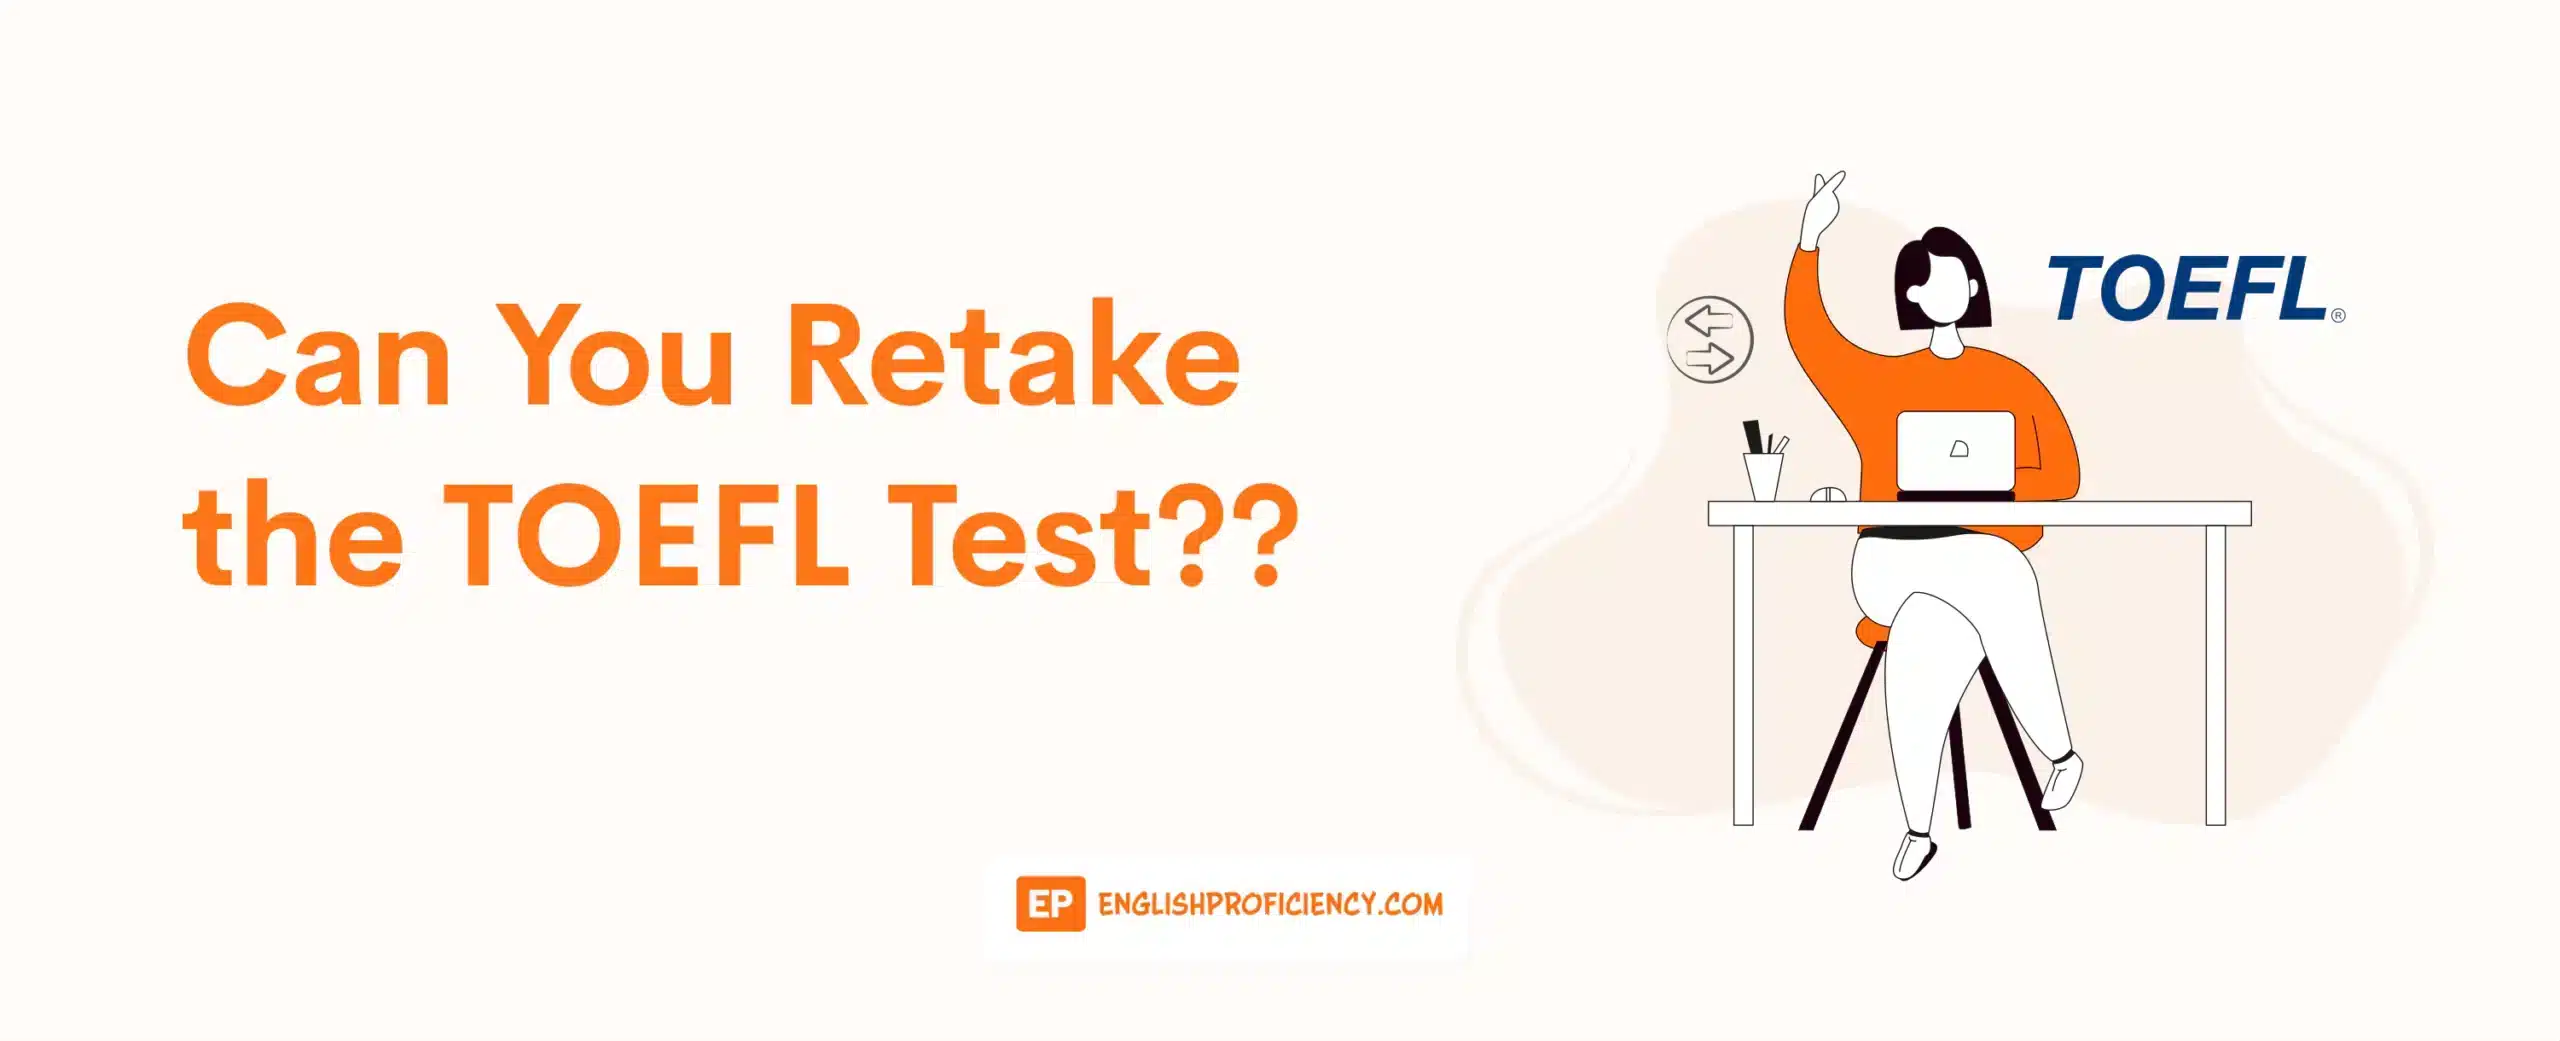 Can You Retake the TOEFL Test